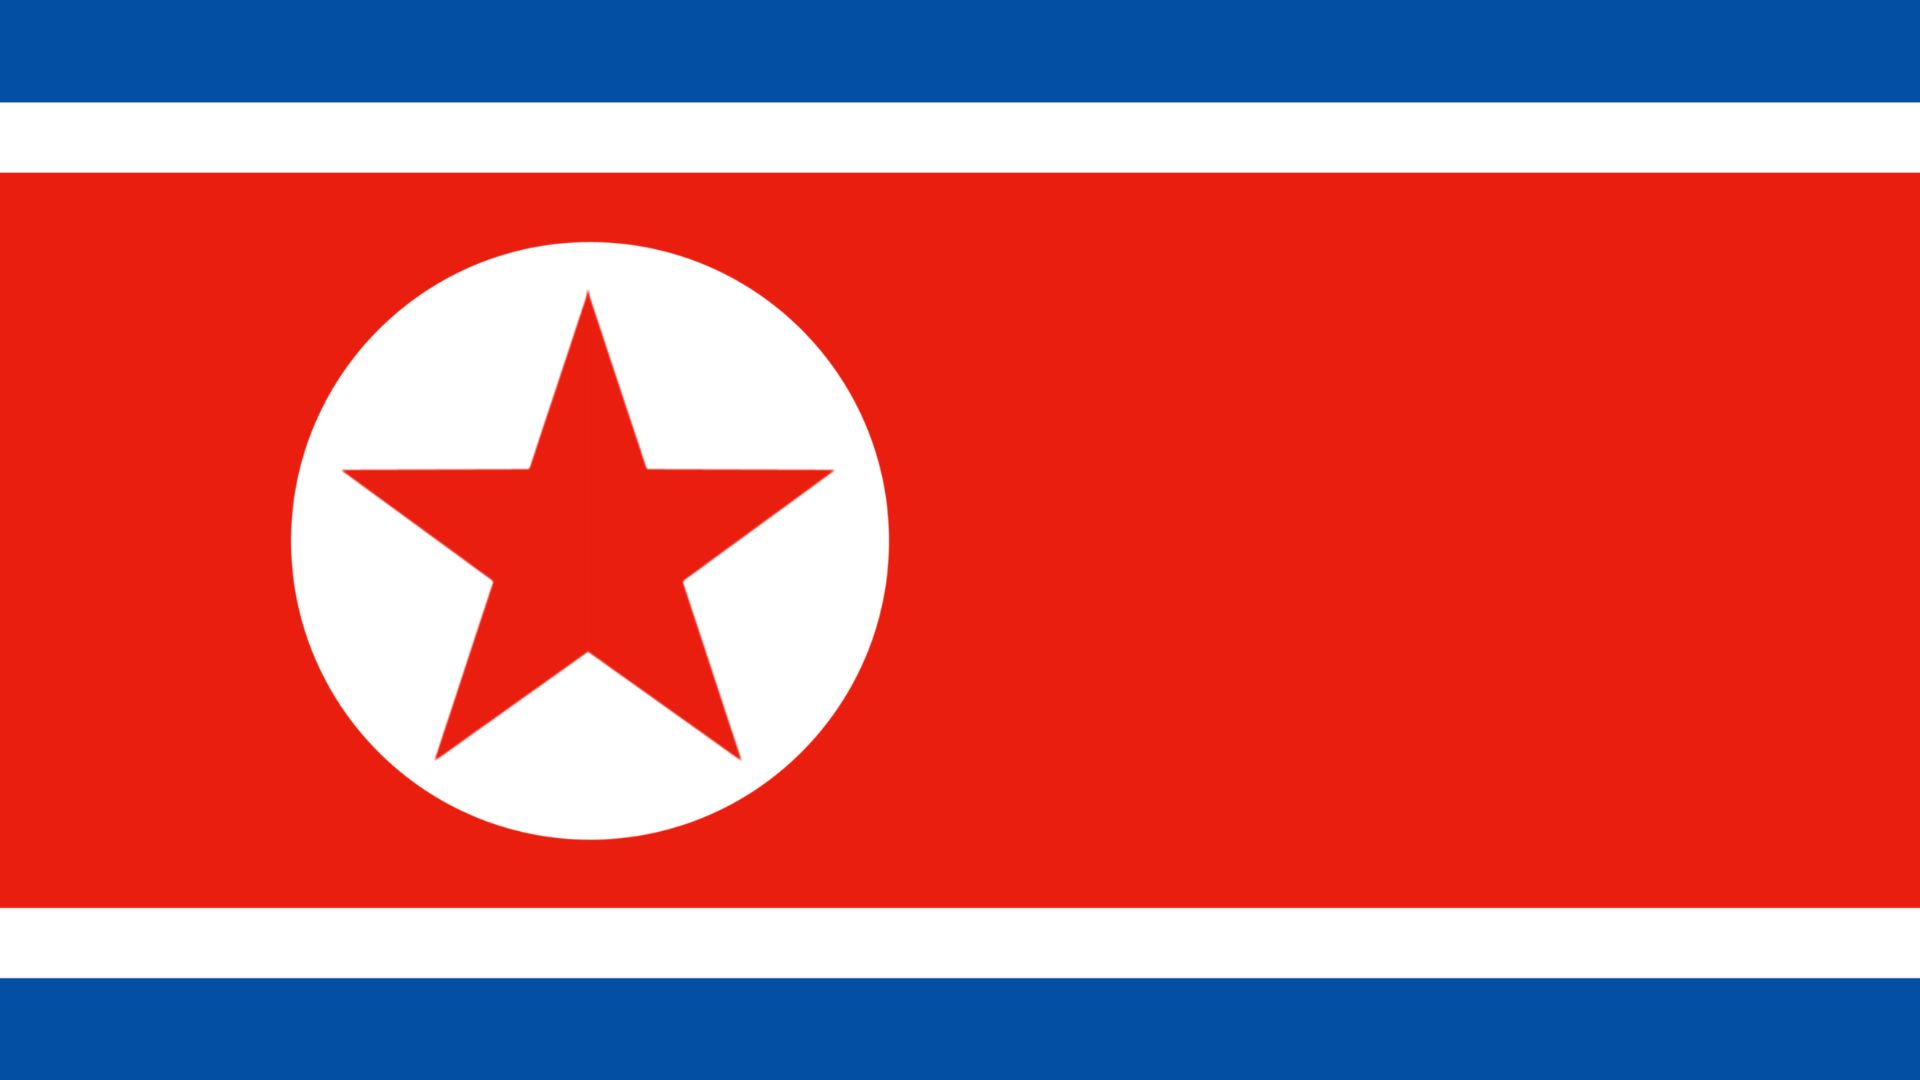 A bandeira da Coreia do Norte consiste de um painel central vermelho que contrasta, no topo e em baixo, com uma fina faixa branca e uma faixa azul mais ampla. O painel vermelho central da bandeira inclui no lado mais próximo da haste uma estrela vermelha de cinco pontas inserida num círculo branco.